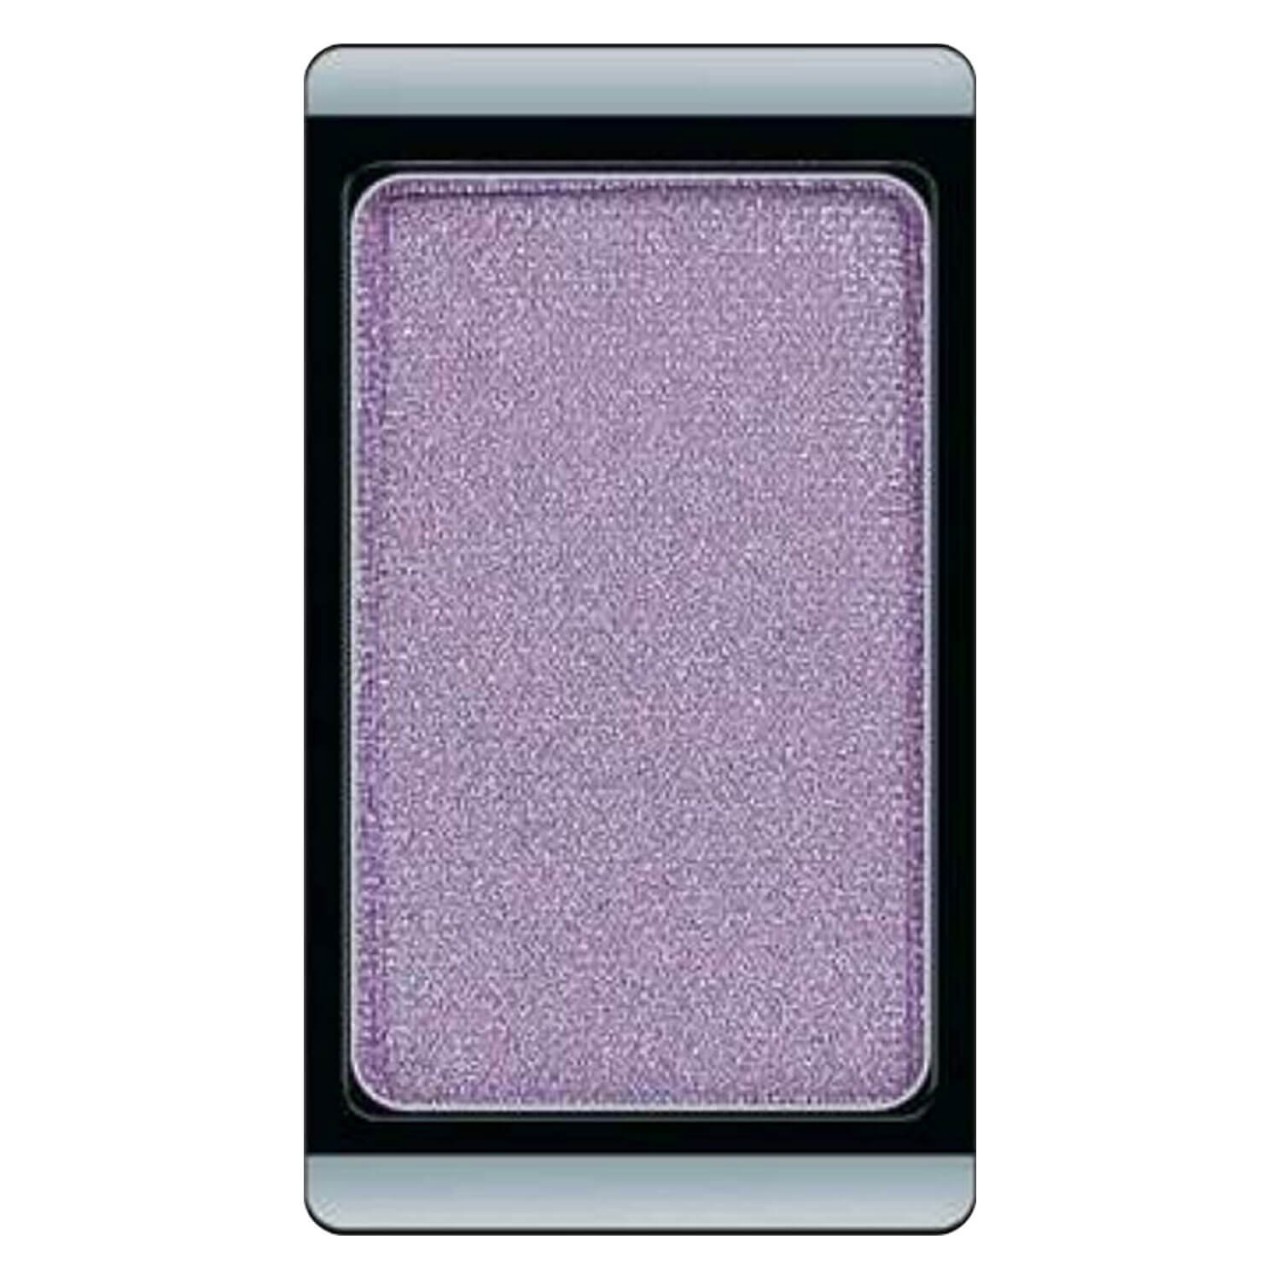 Eyeshadow Pearl - Antique Purple 90 von Artdeco